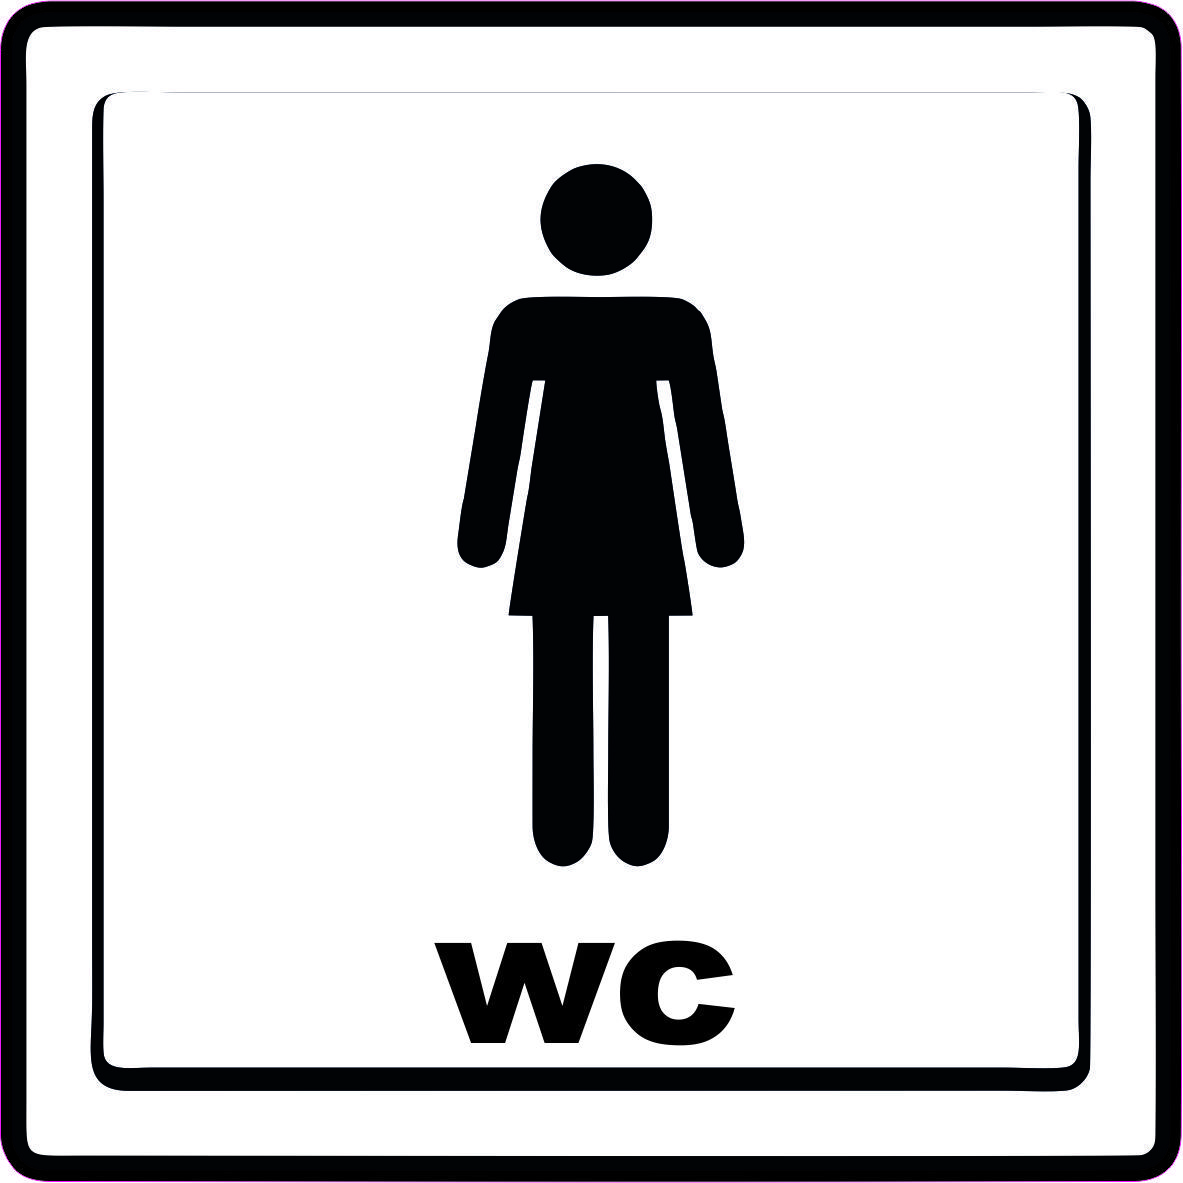 Naklejka Nalepka Informacyjna Oznaczenie Wc Toalety 10X10 Cm